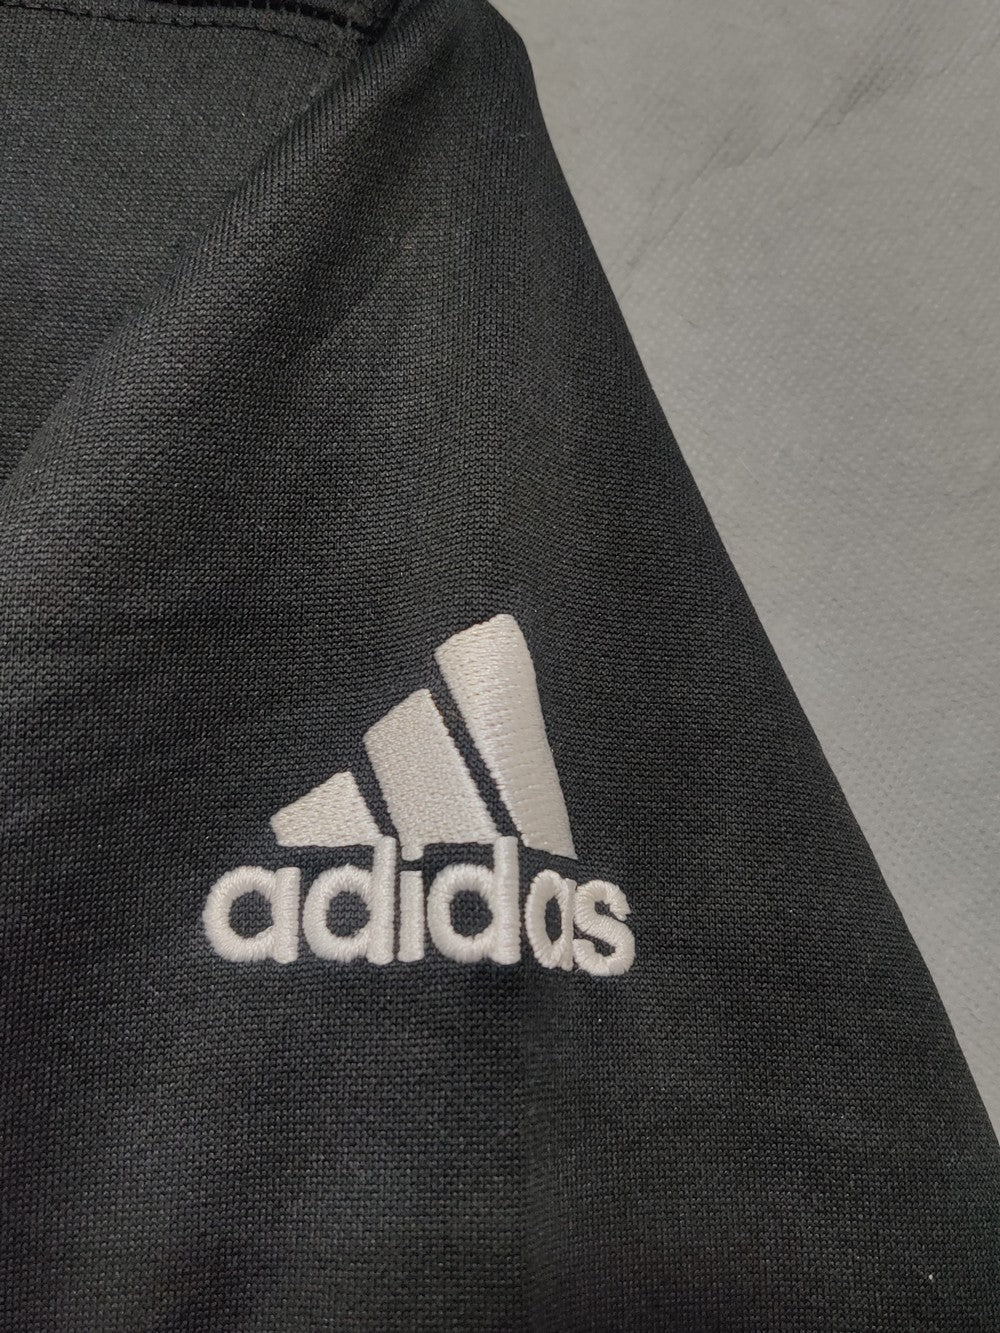 Adidas Branded Original Hood For Men Hoodie